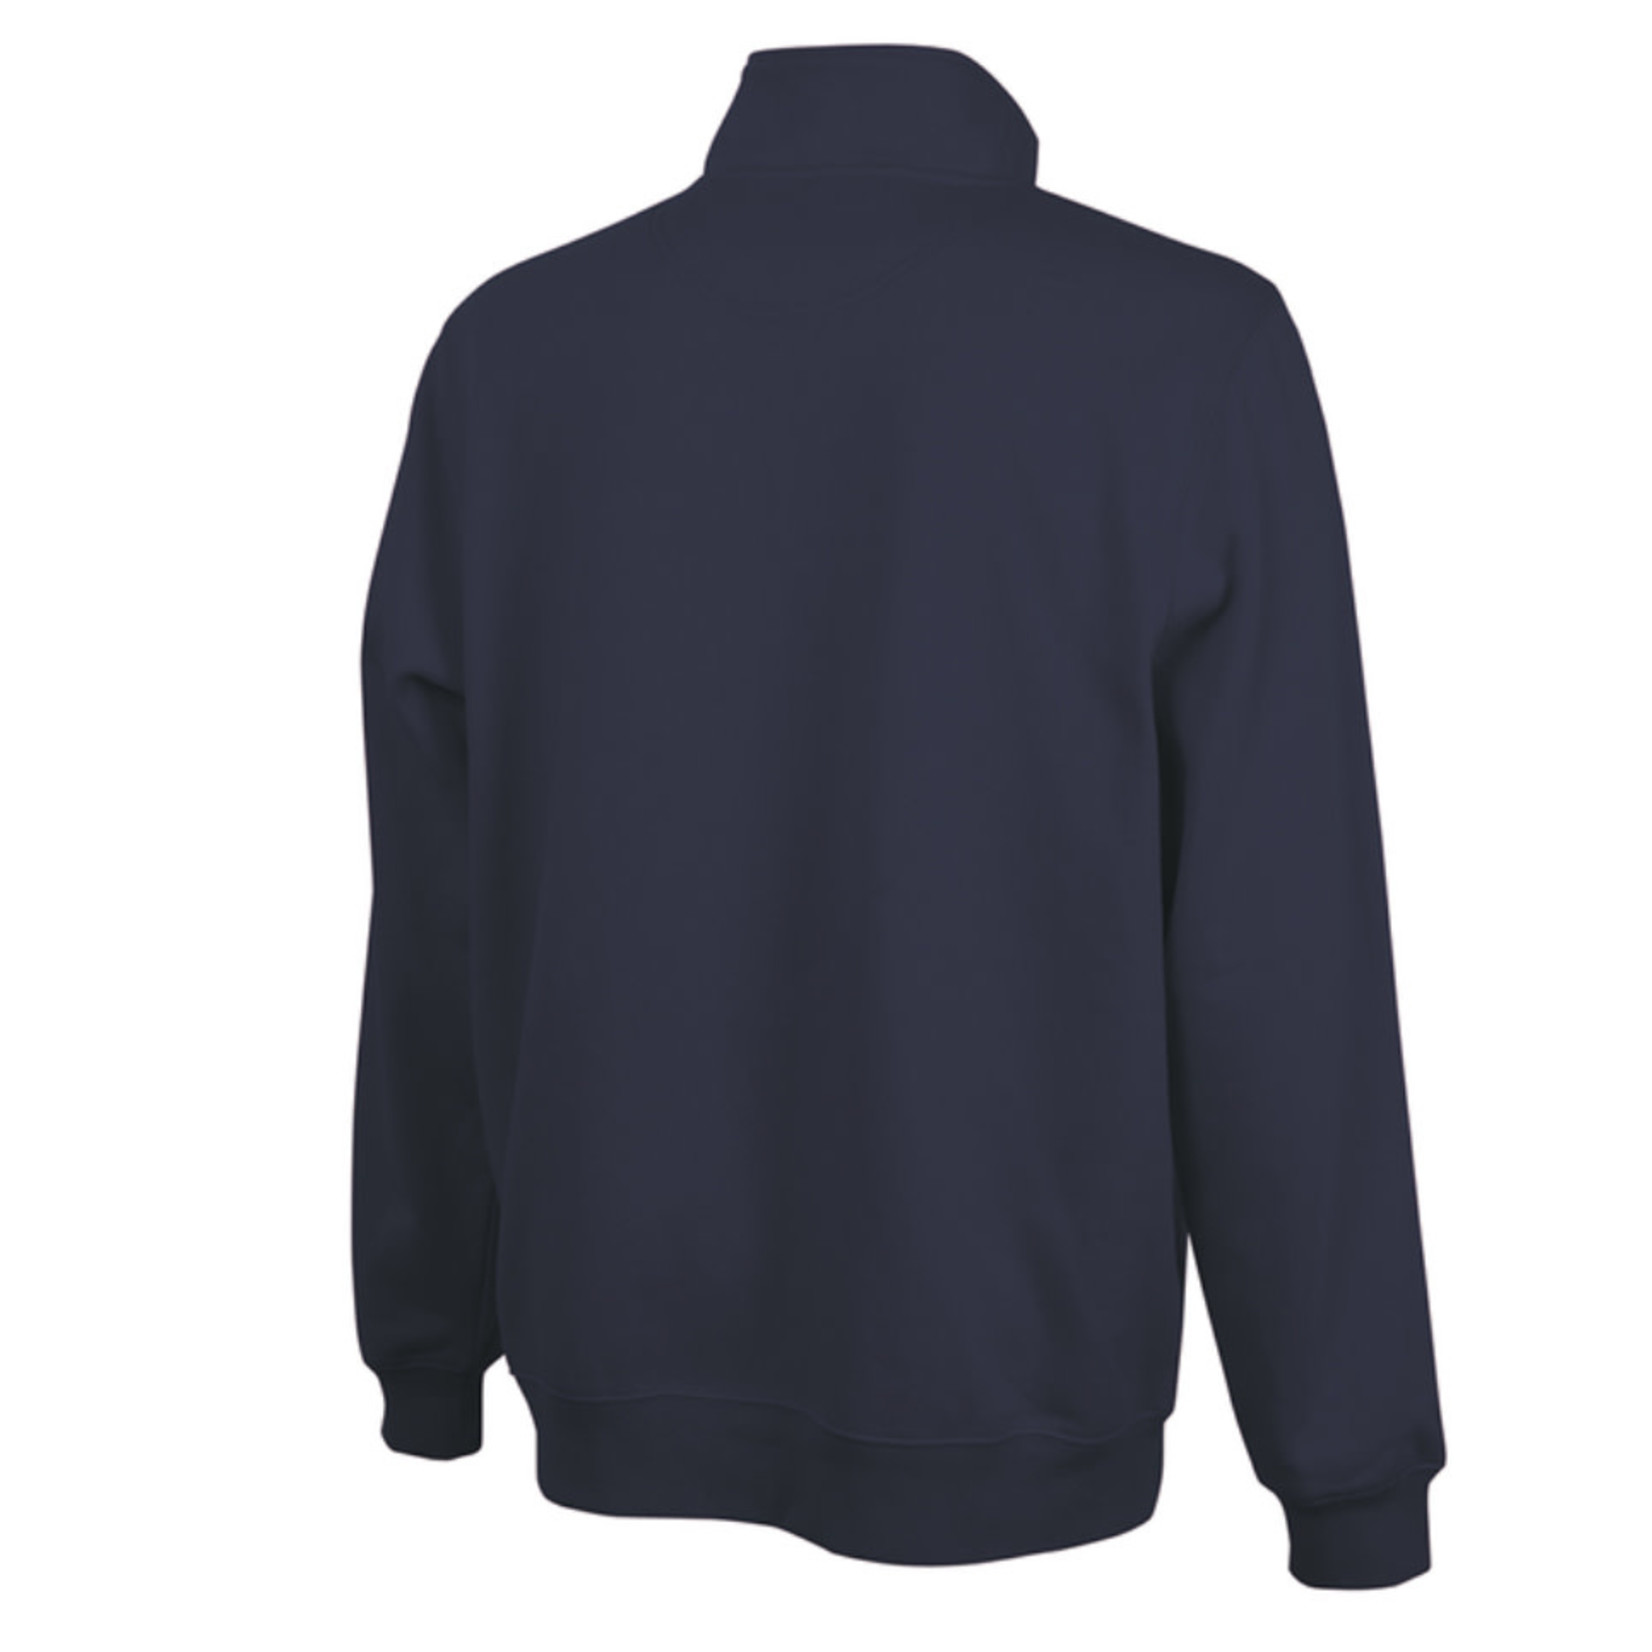 Crosswind 1/4 Zip Sweatshirt - Heather Navy - Small